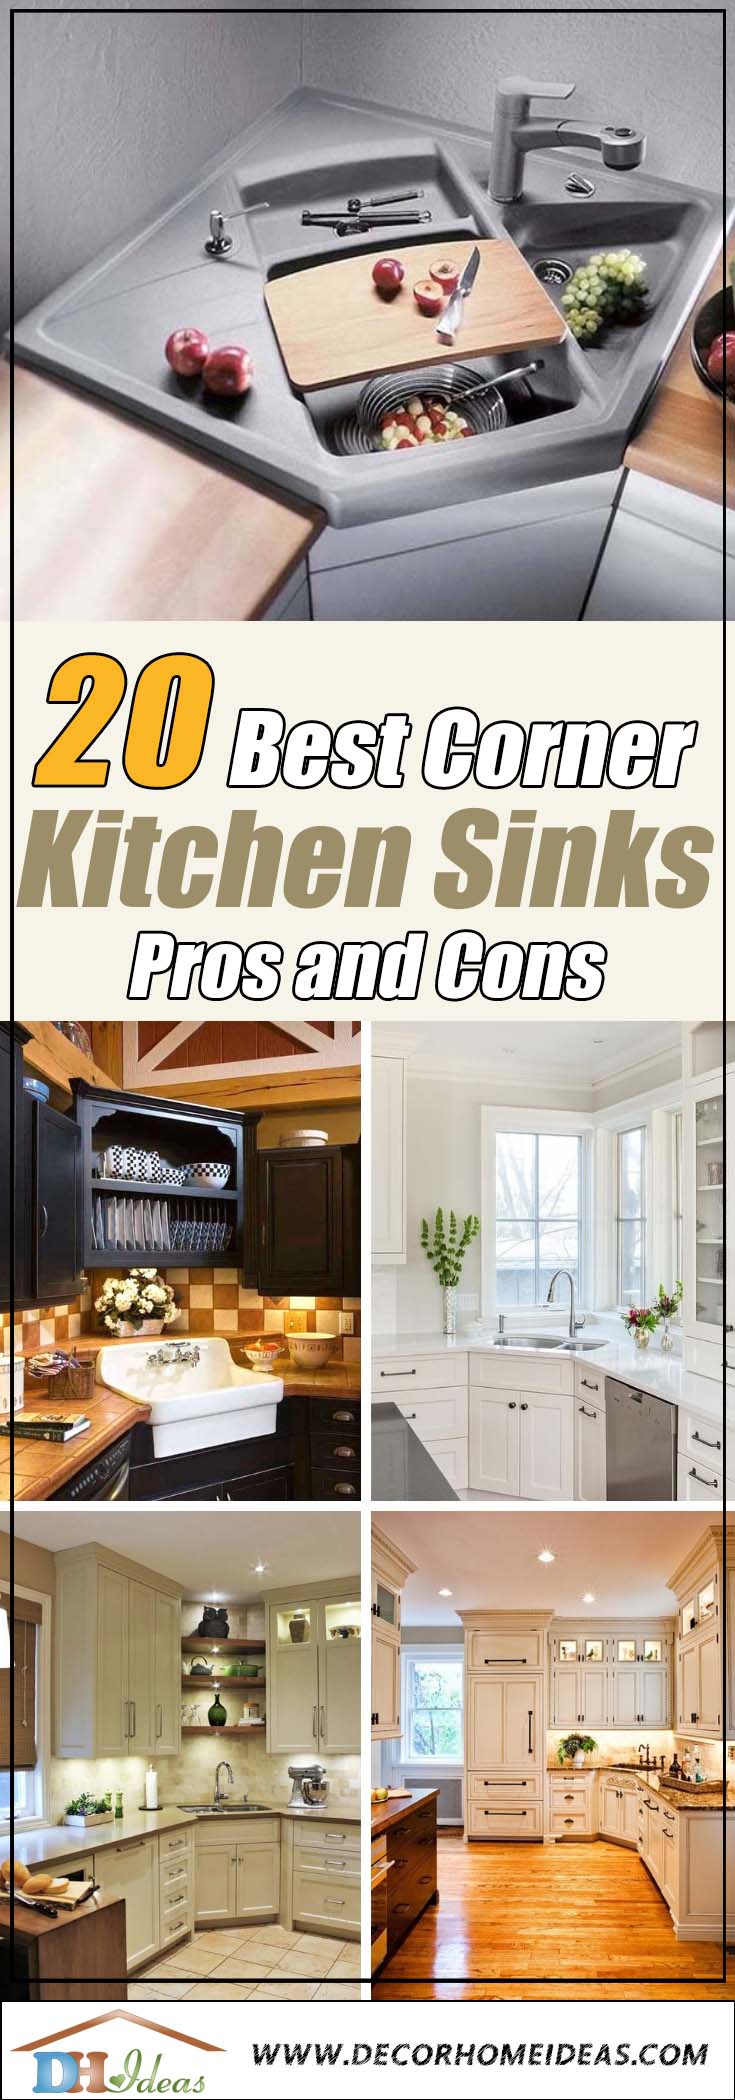 20 Best Corner Kitchen Sink Designs For, How To Build Corner Kitchen Sink Cabinet